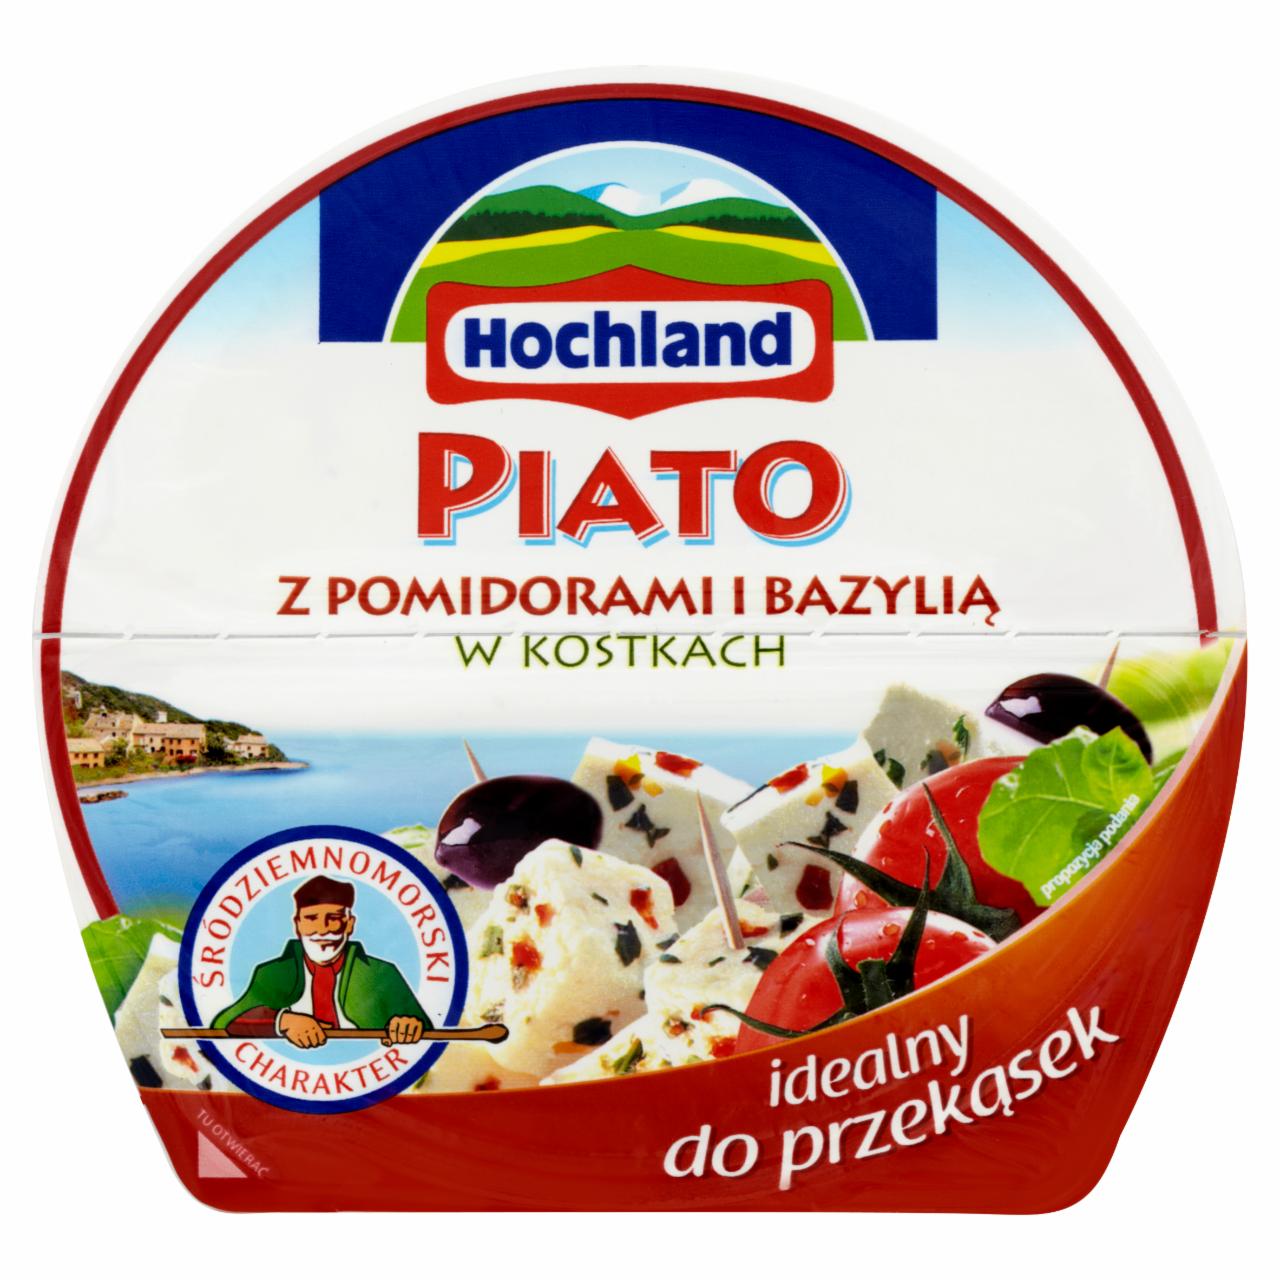 Zdjęcia - Hochland Piato z pomidorami i bazylią w kostkach Ser solankowy 135 g